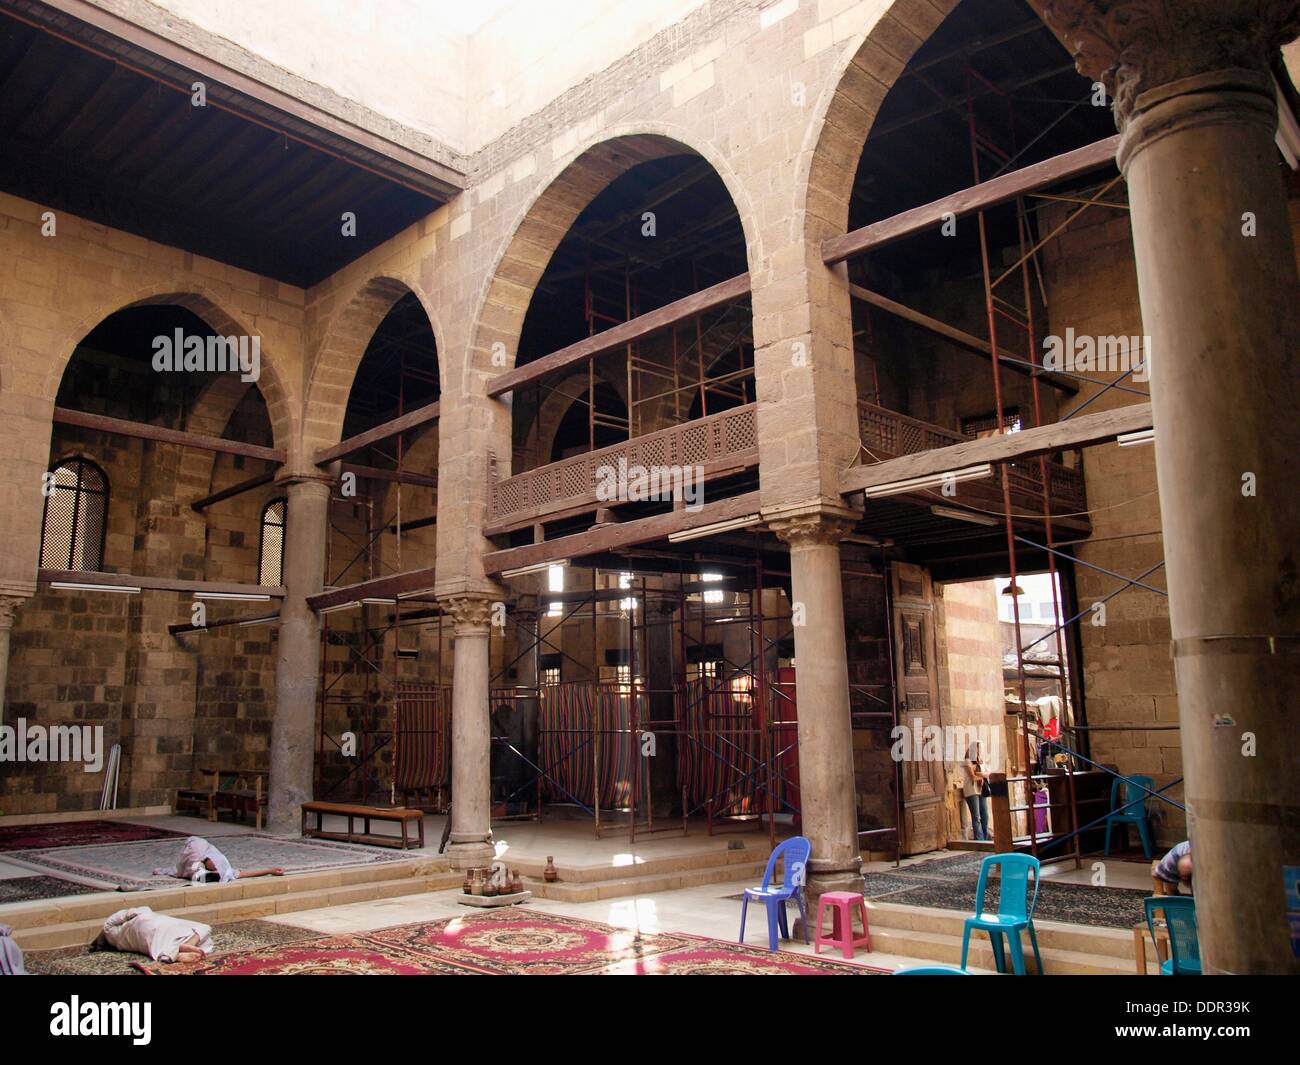 Mezquita mameluca barrio islámico, El Cairo, Egipto Foto de stock